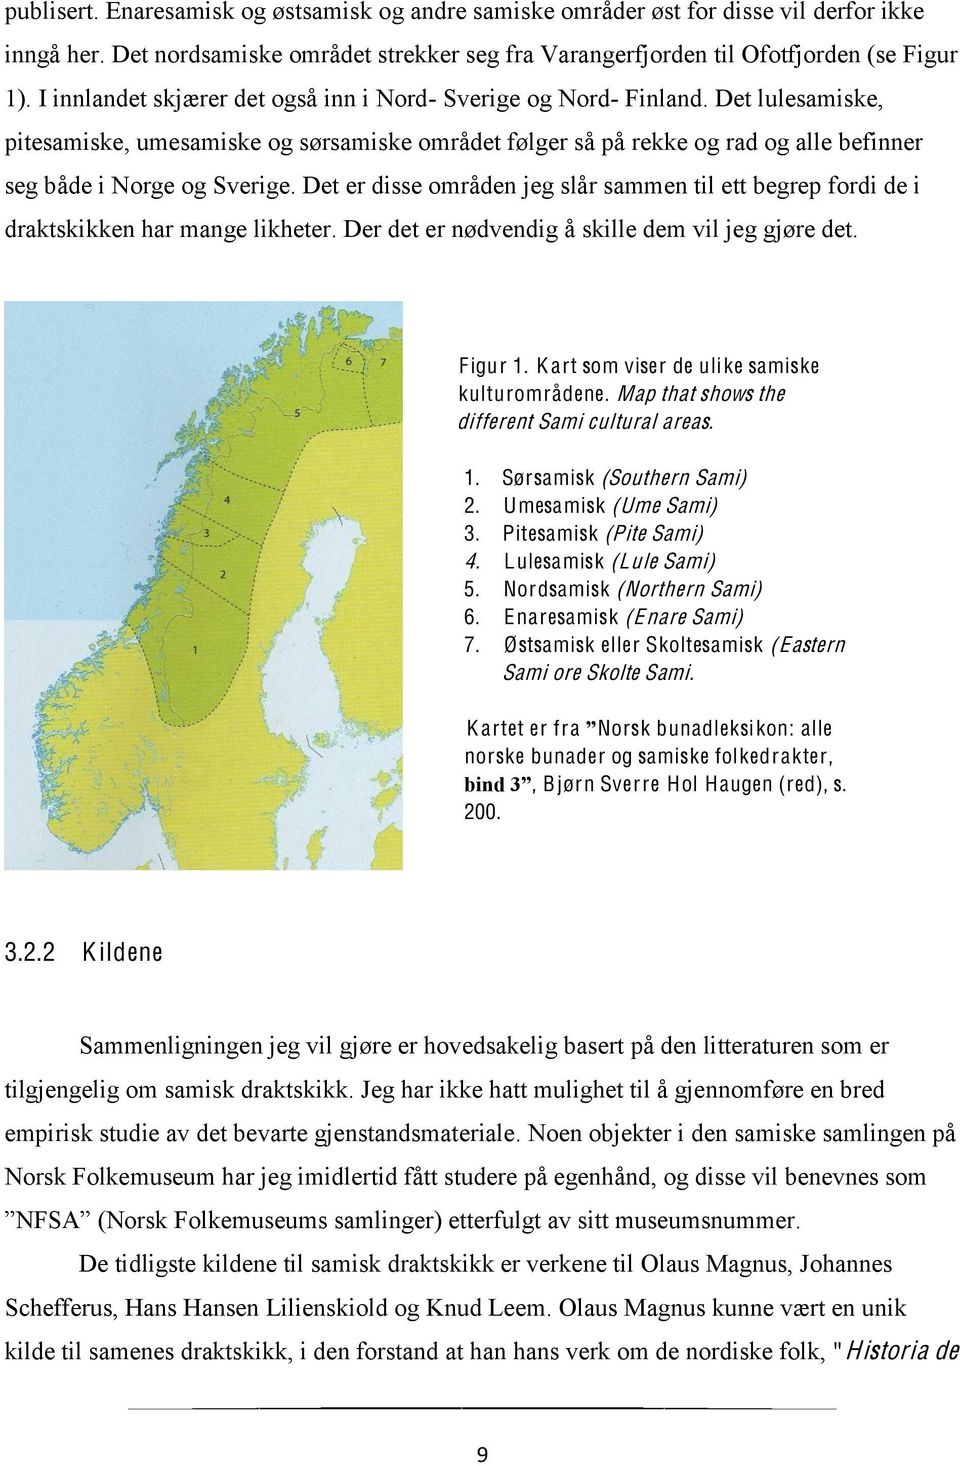 Det lulesamiske, pitesamiske, umesamiske og sørsamiske området følger så på rekke og rad og alle befinner seg både i Norge og Sverige.